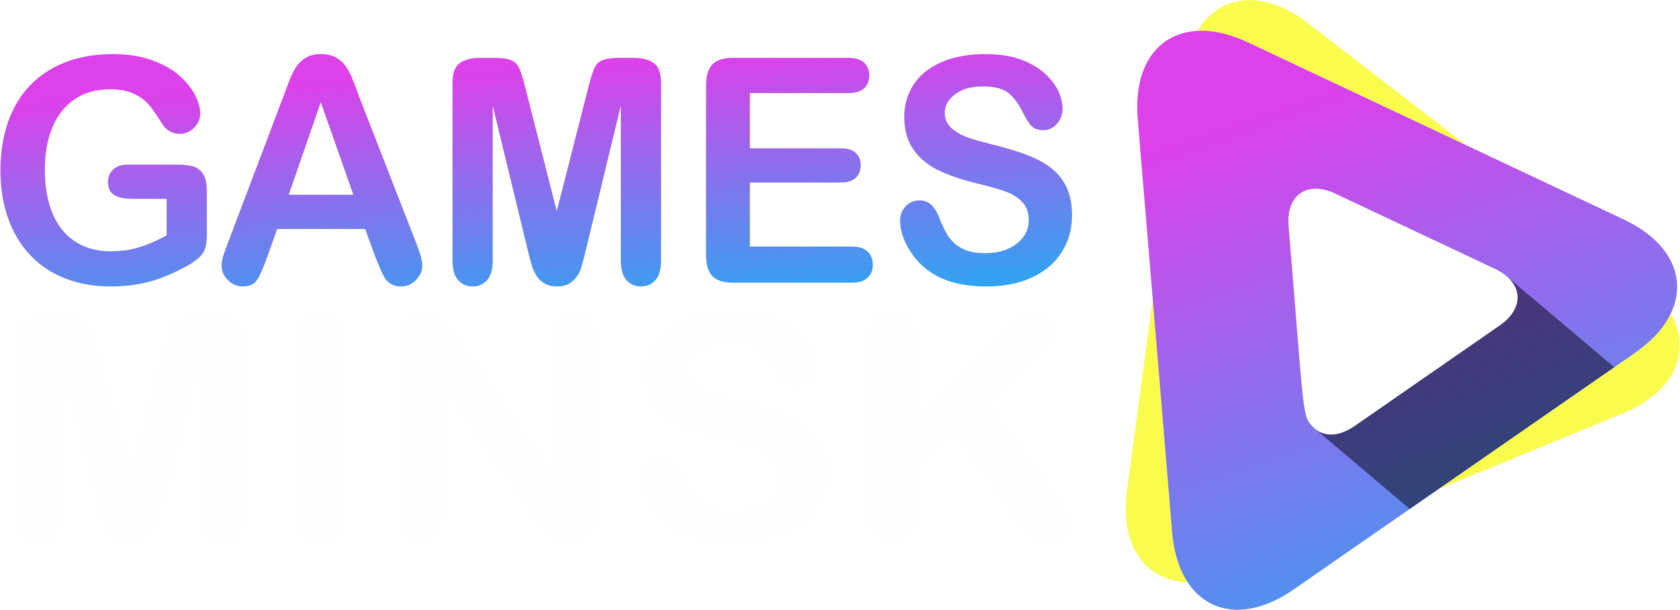  GAMES MINSK 